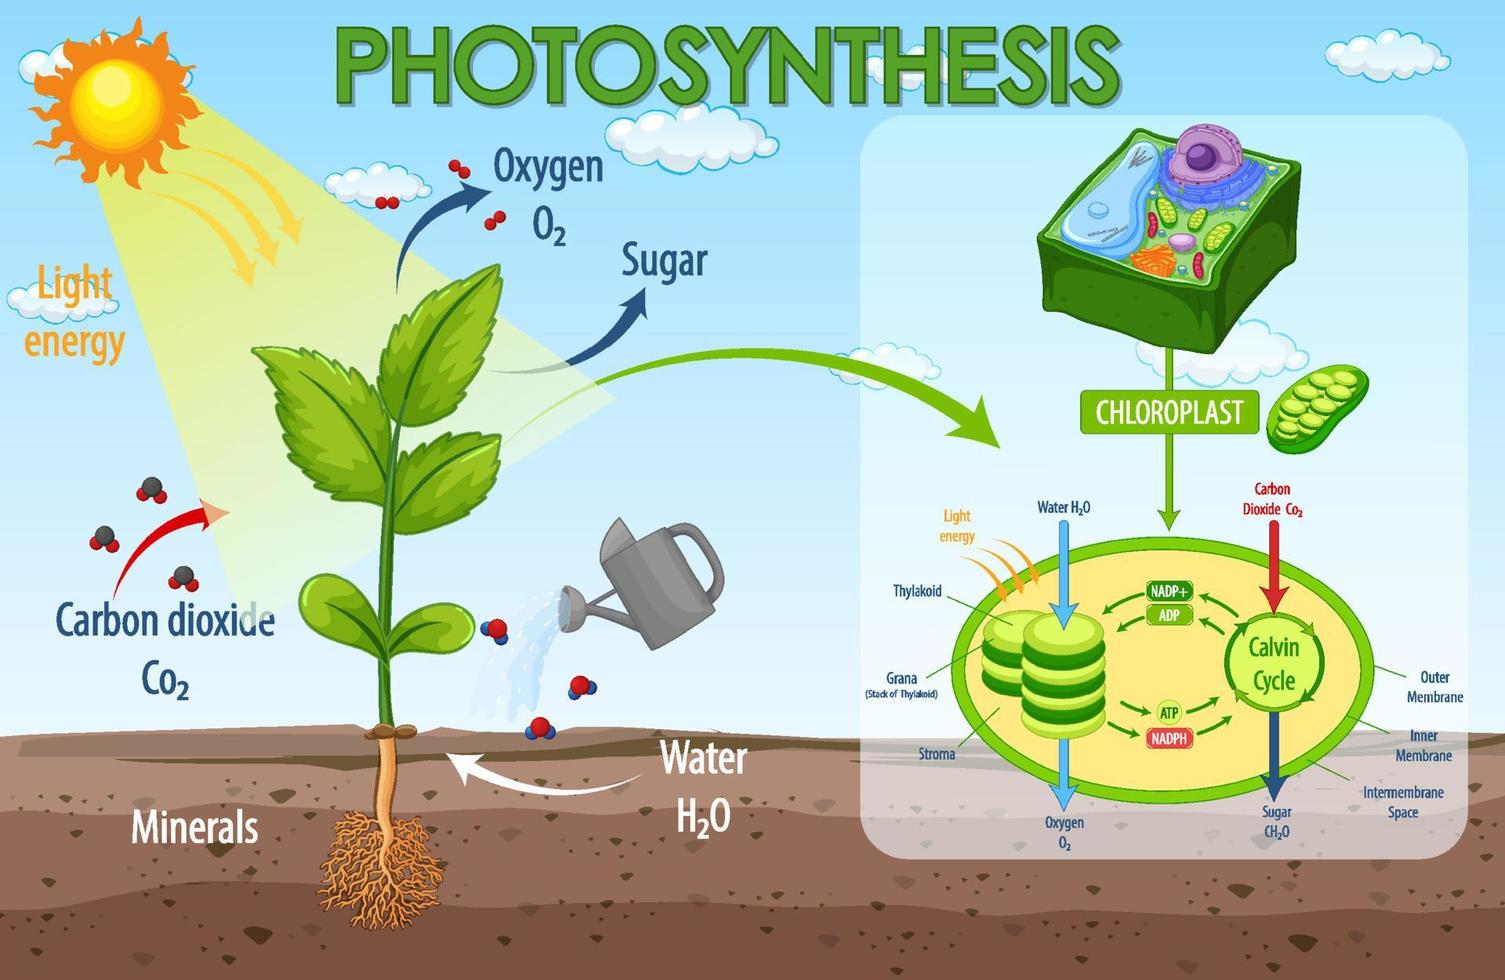 diagram som visar processen för fotosyntes i anläggningen vektor